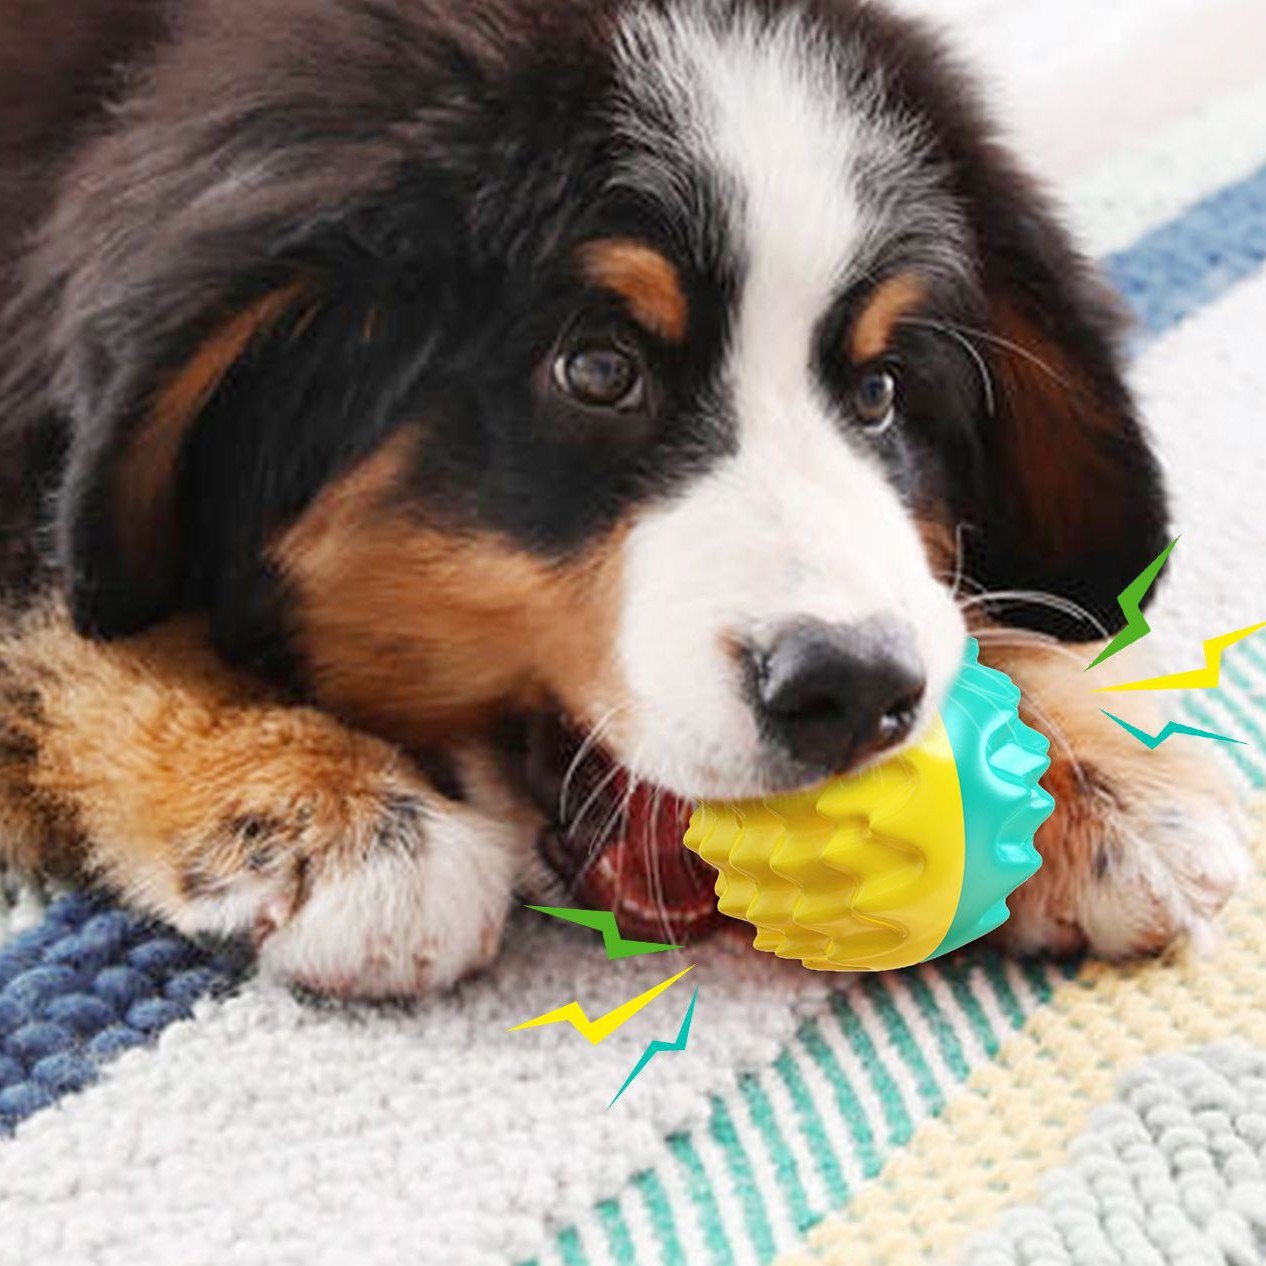 כדור TPR משמיע קול מצומק צעצועי מים קיץ אילוף כלבים